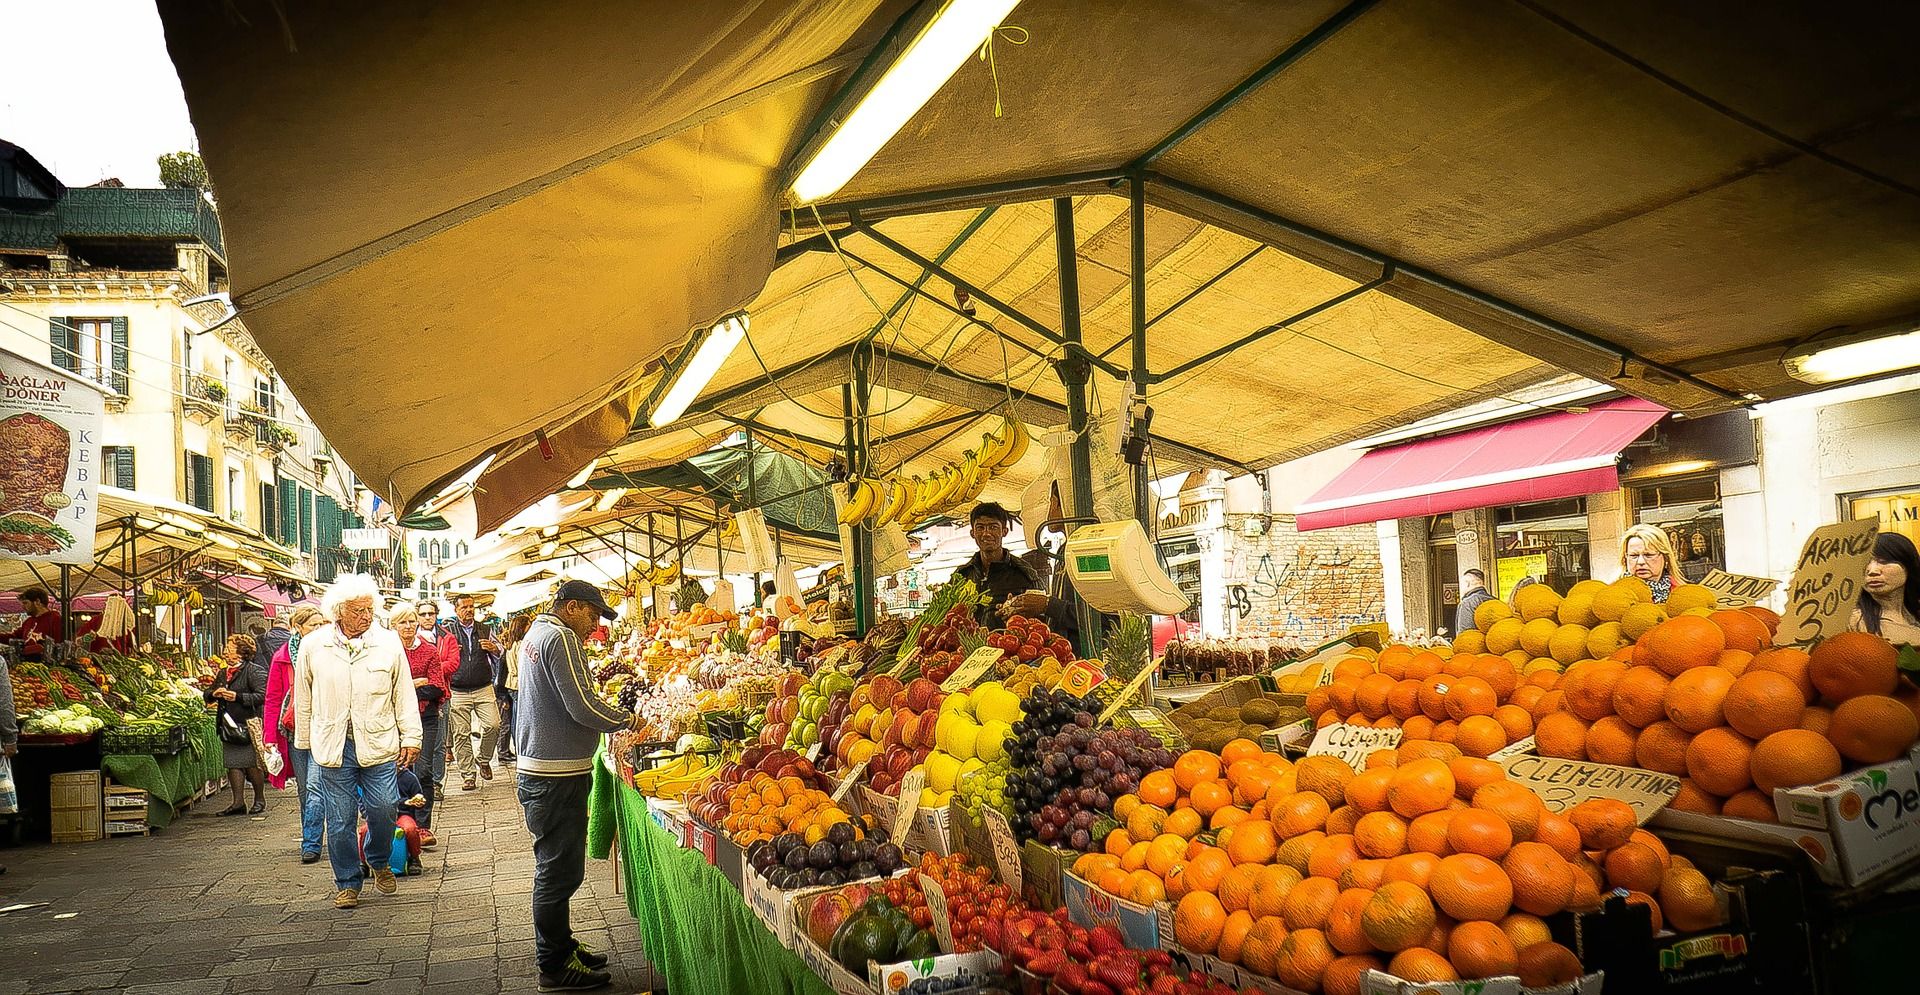 Frutas y verduras expuestas en un mercado de proximidad / Foto: Pixabay